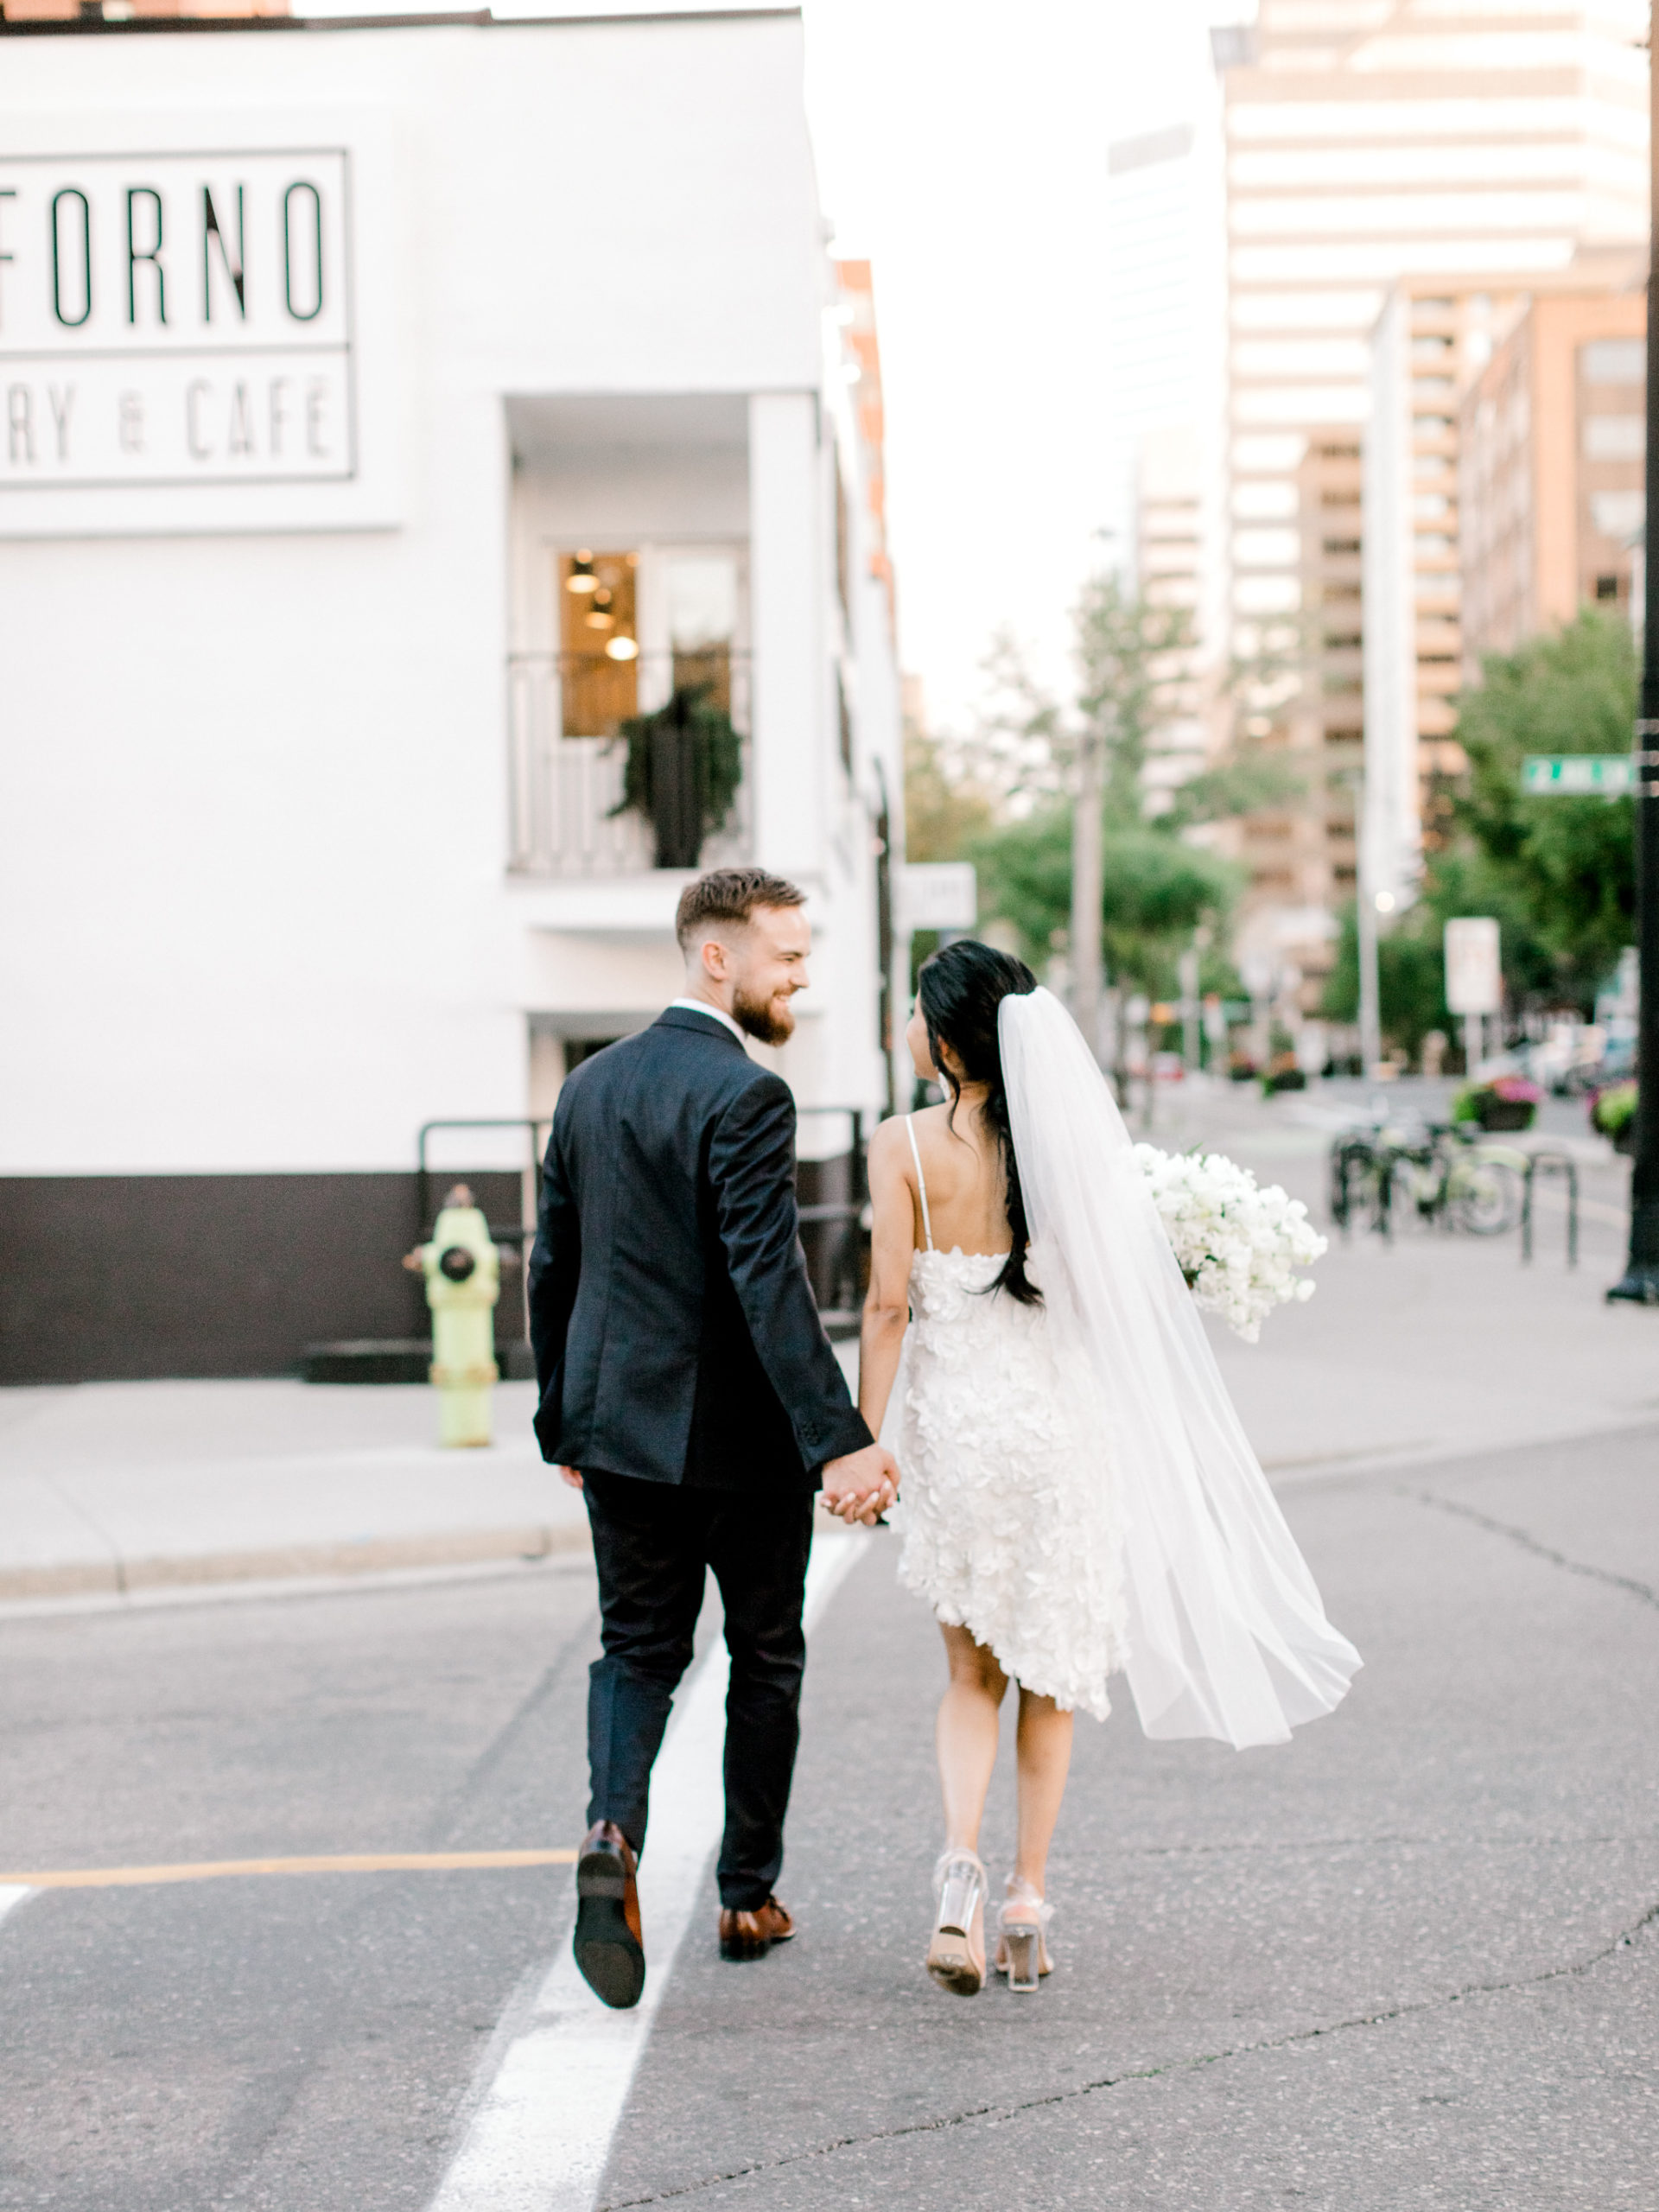 Planning a micro wedding: A helpful guide - Calgary Wedding